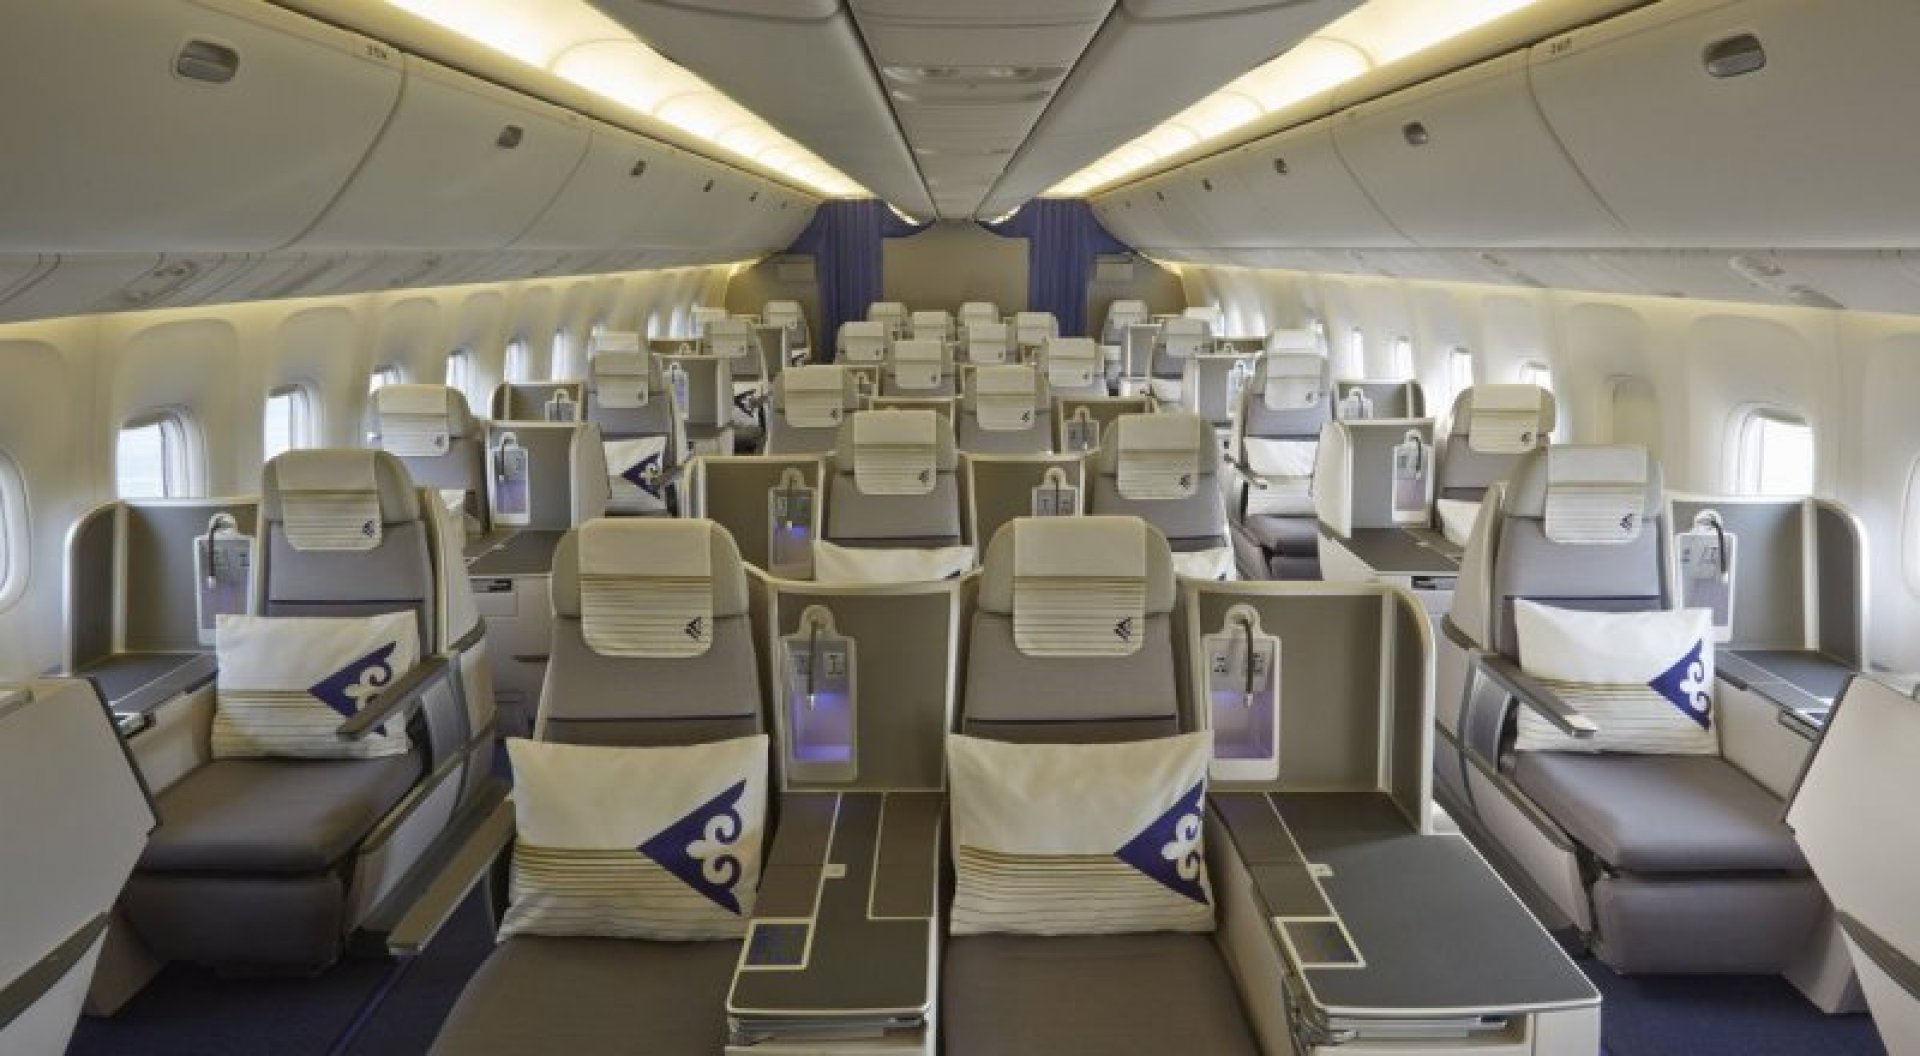 бизнес класс в салоне астана эйр - как выглядят кресла в первом классе на борту самолета